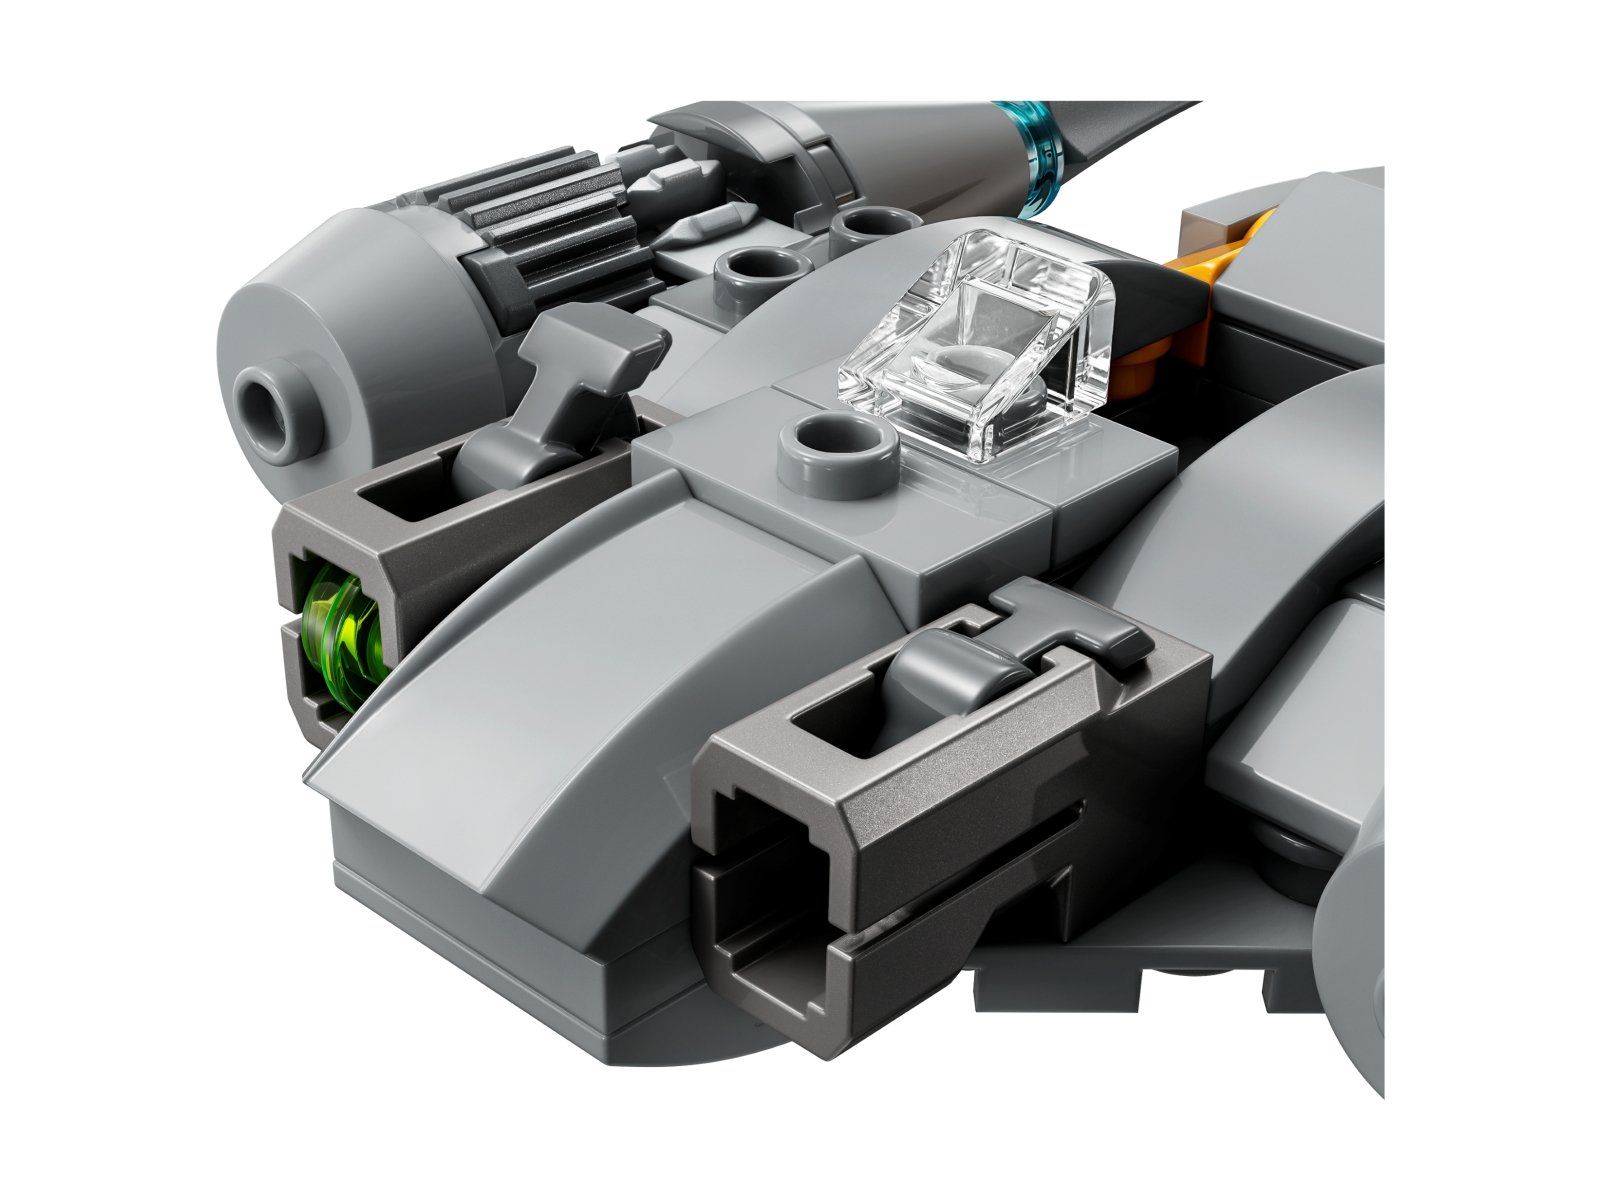 LEGO Star Wars Myśliwiec N-1™ Mandalorianina w mikroskali 75363